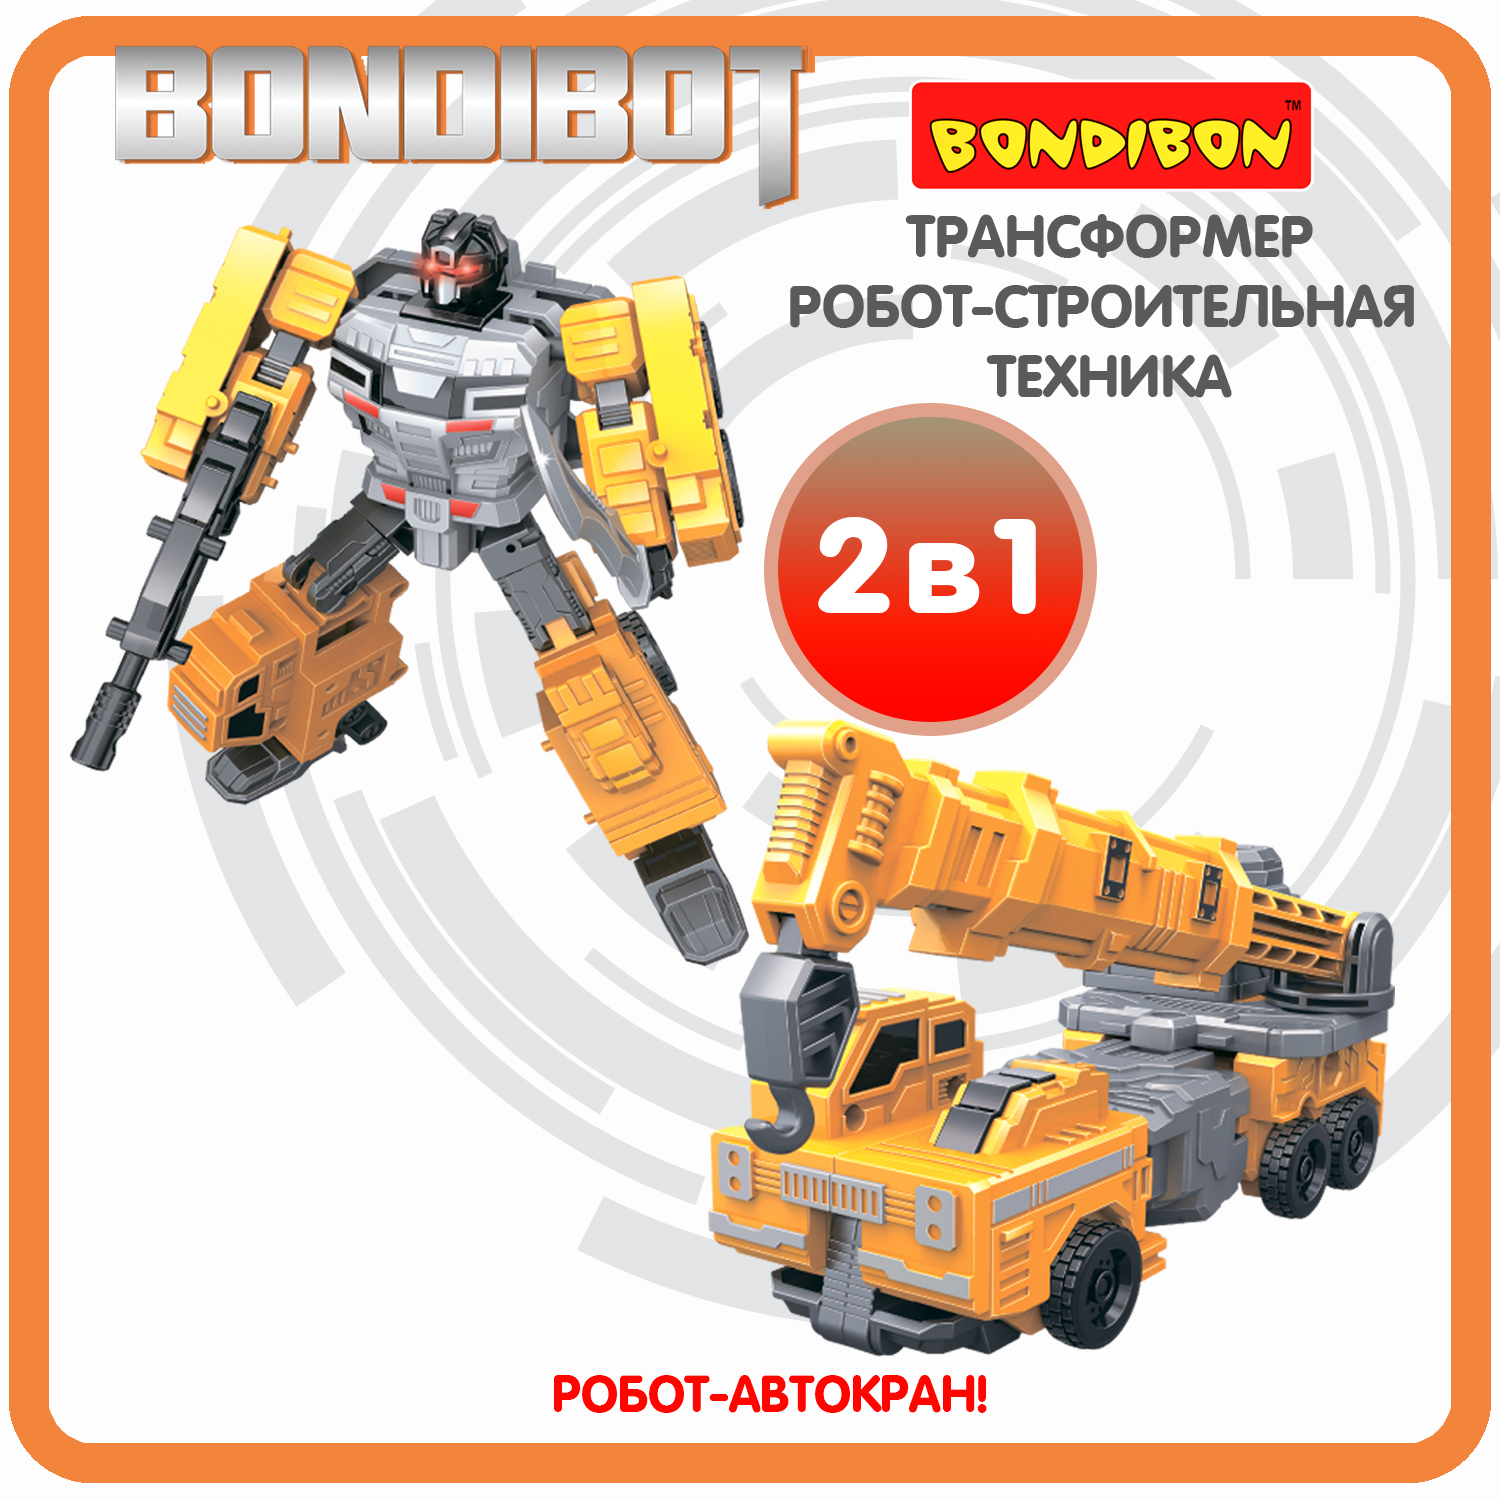 Трансформер робот-строительная техника, 2в1 BONDIBOT Bondibon, автокран / ВВ6050 трансформер робот строительная техника 2в1 bondibot bondibon самосвал вв6052